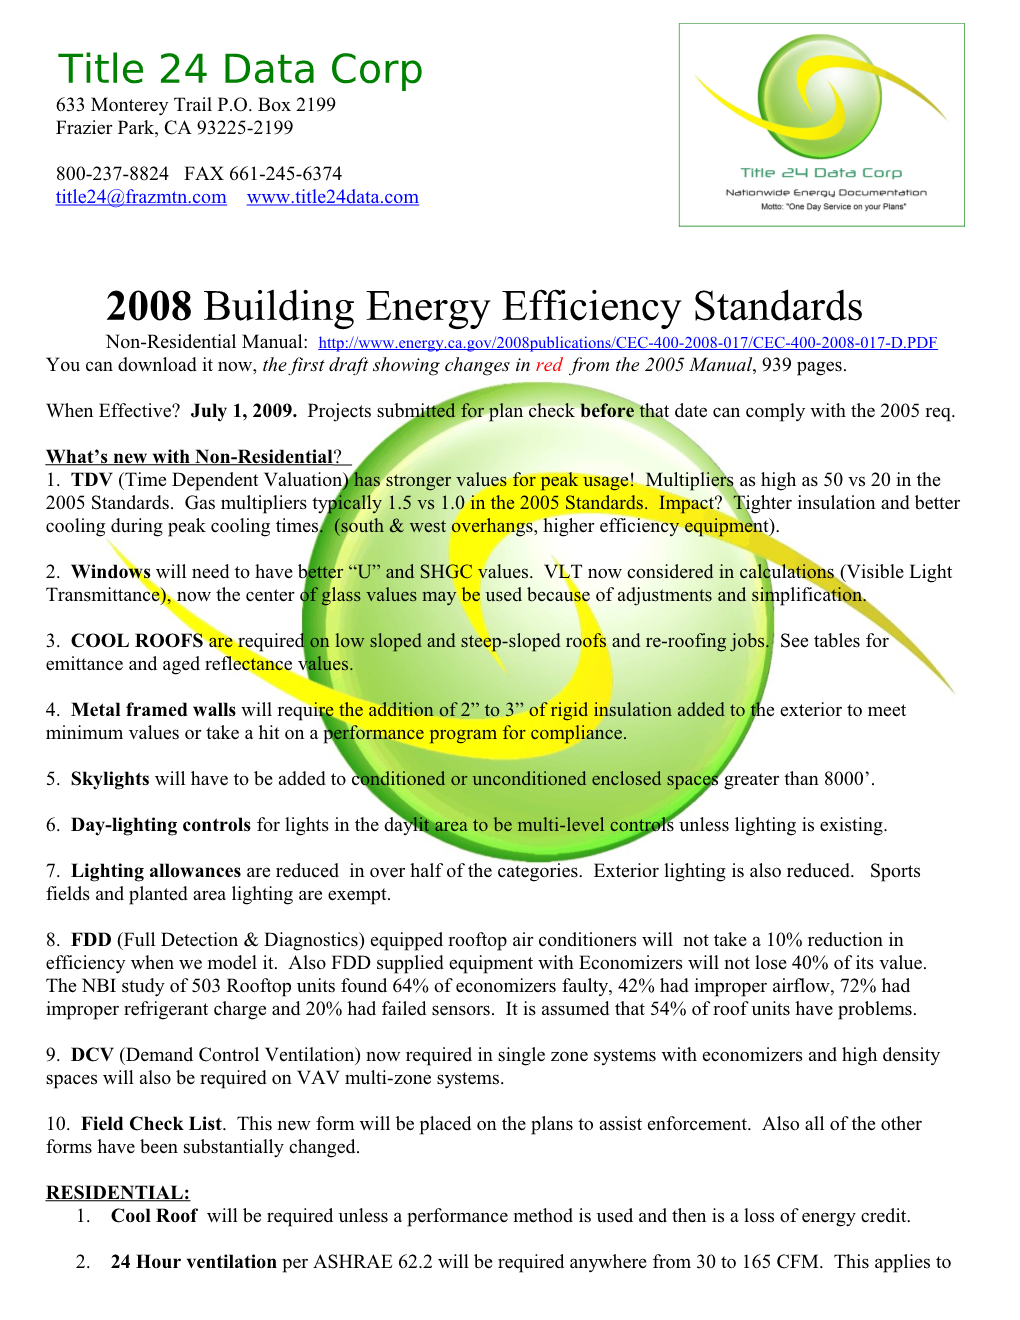 2008 Building Energy Efficiency Standards